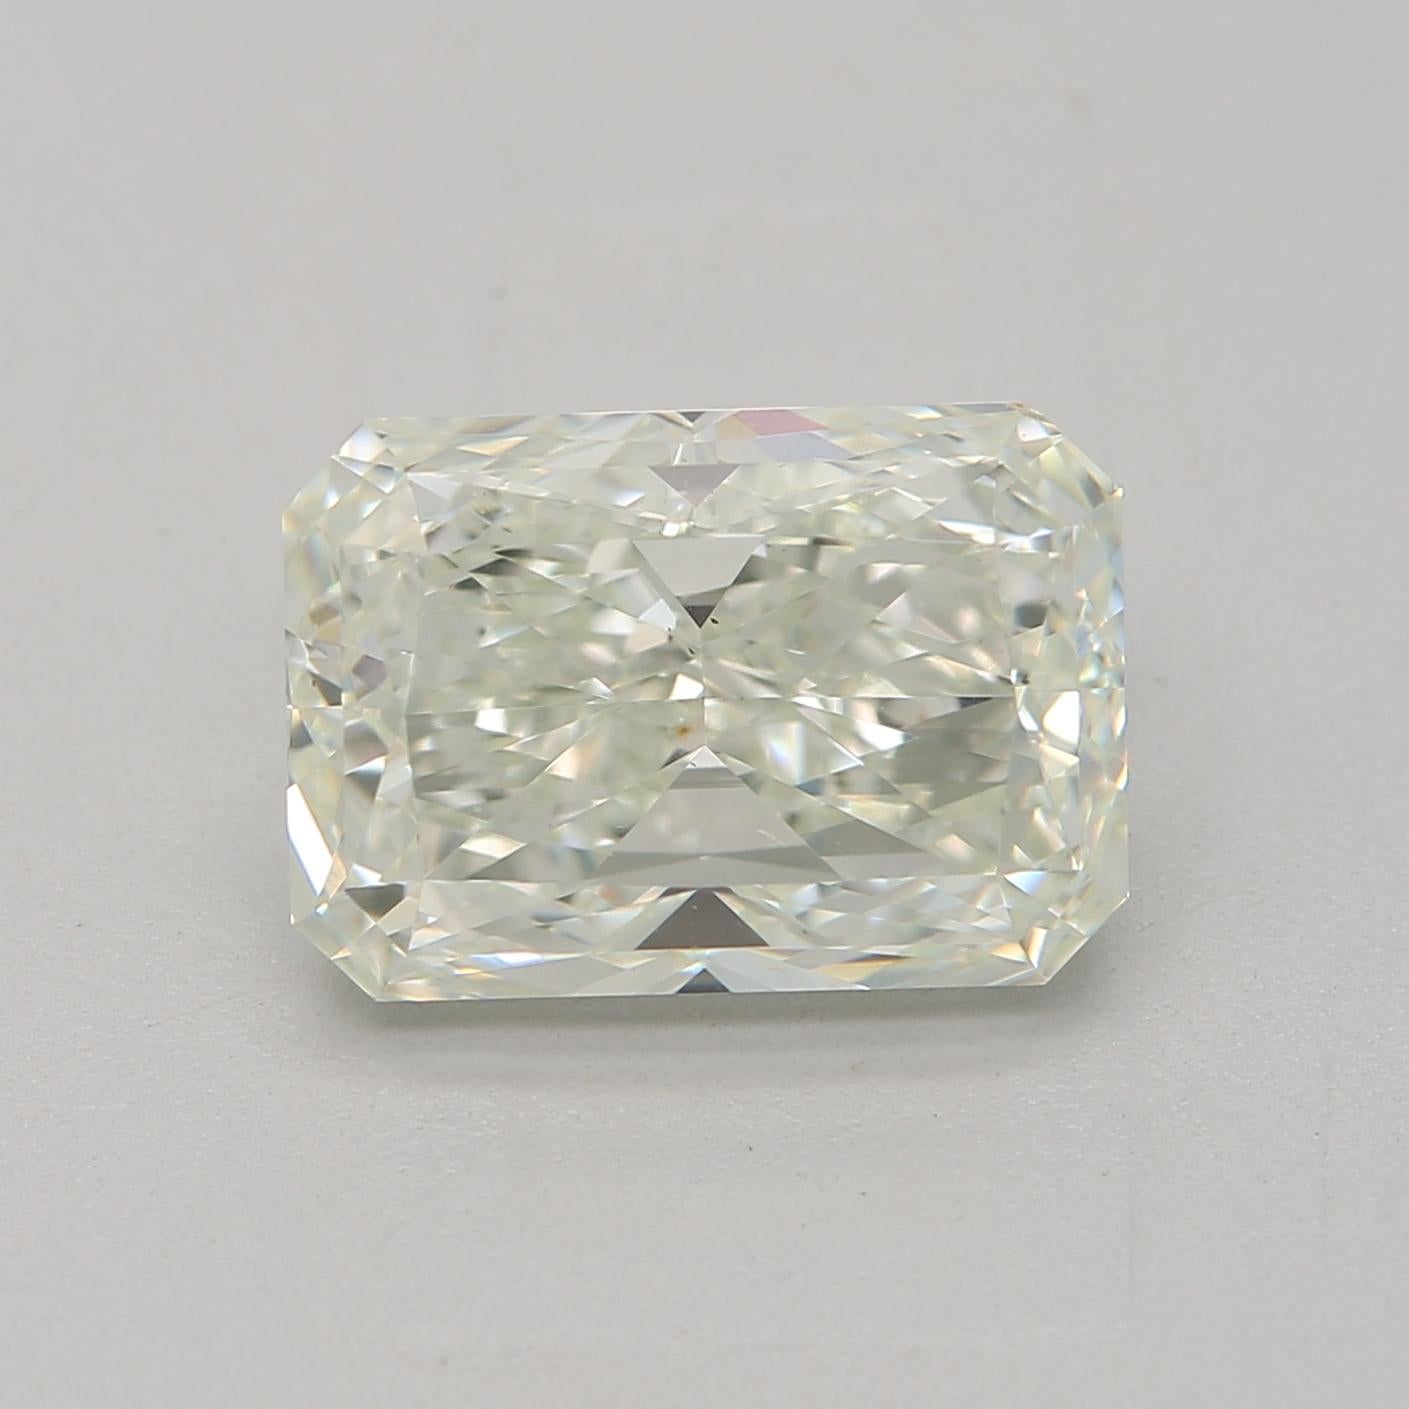 *100% NATÜRLICHE FANCY-DIAMANTEN*

Diamant Details

➛ Form: Strahlend
➛ Farbgrad: Sehr hellgrün
➛ Karat: 2.00
➛ Klarheit: SI1
➛ GIA zertifiziert 

^MERKMALE DES DIAMANTEN^

Unser Diamant im Radiant-Schliff hat eine quadratische oder rechteckige Form